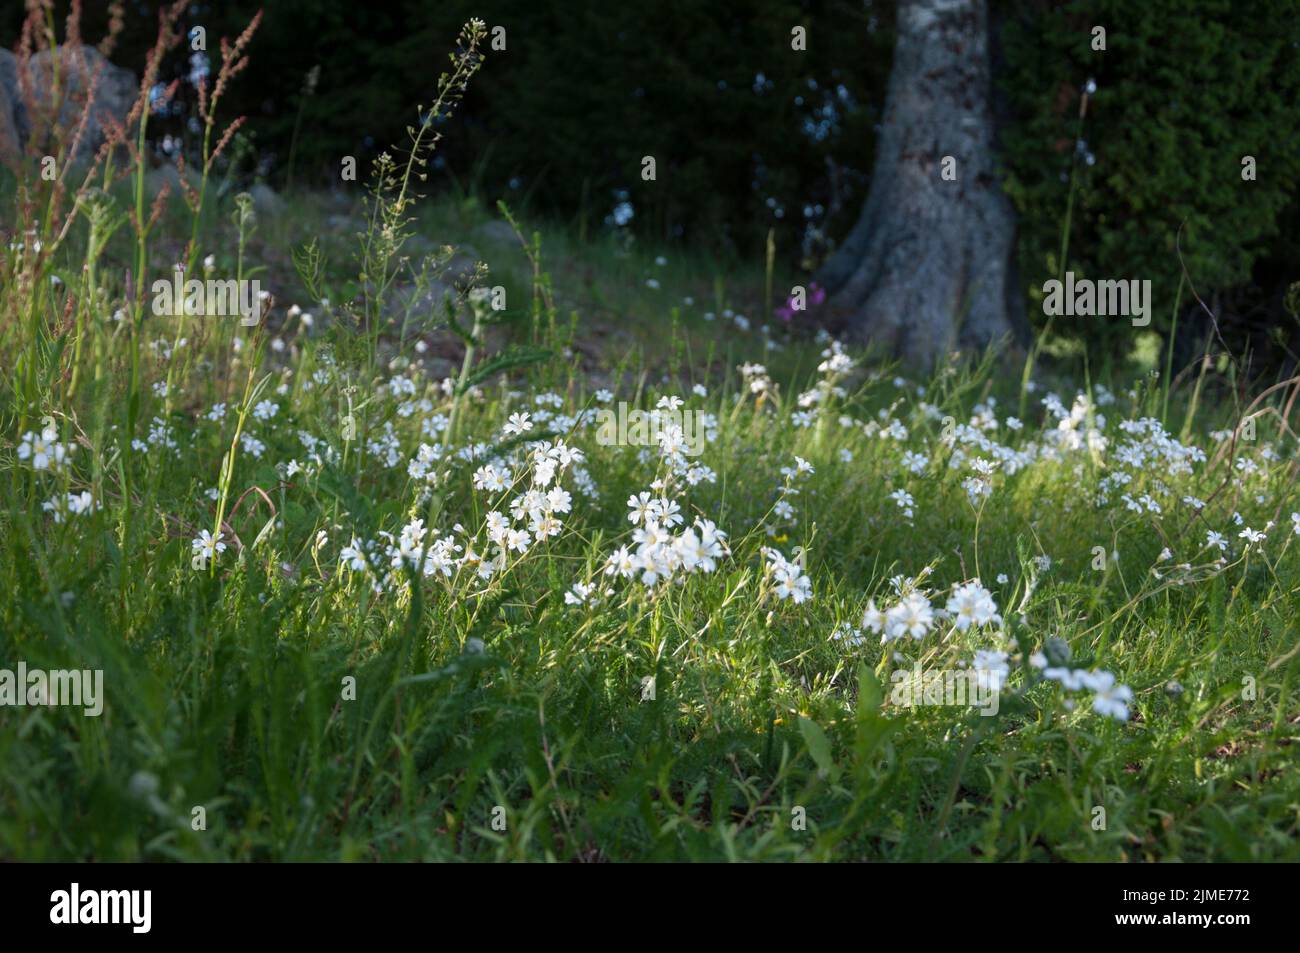 Finnish Wild Flowers/Chickweed Stock Photo